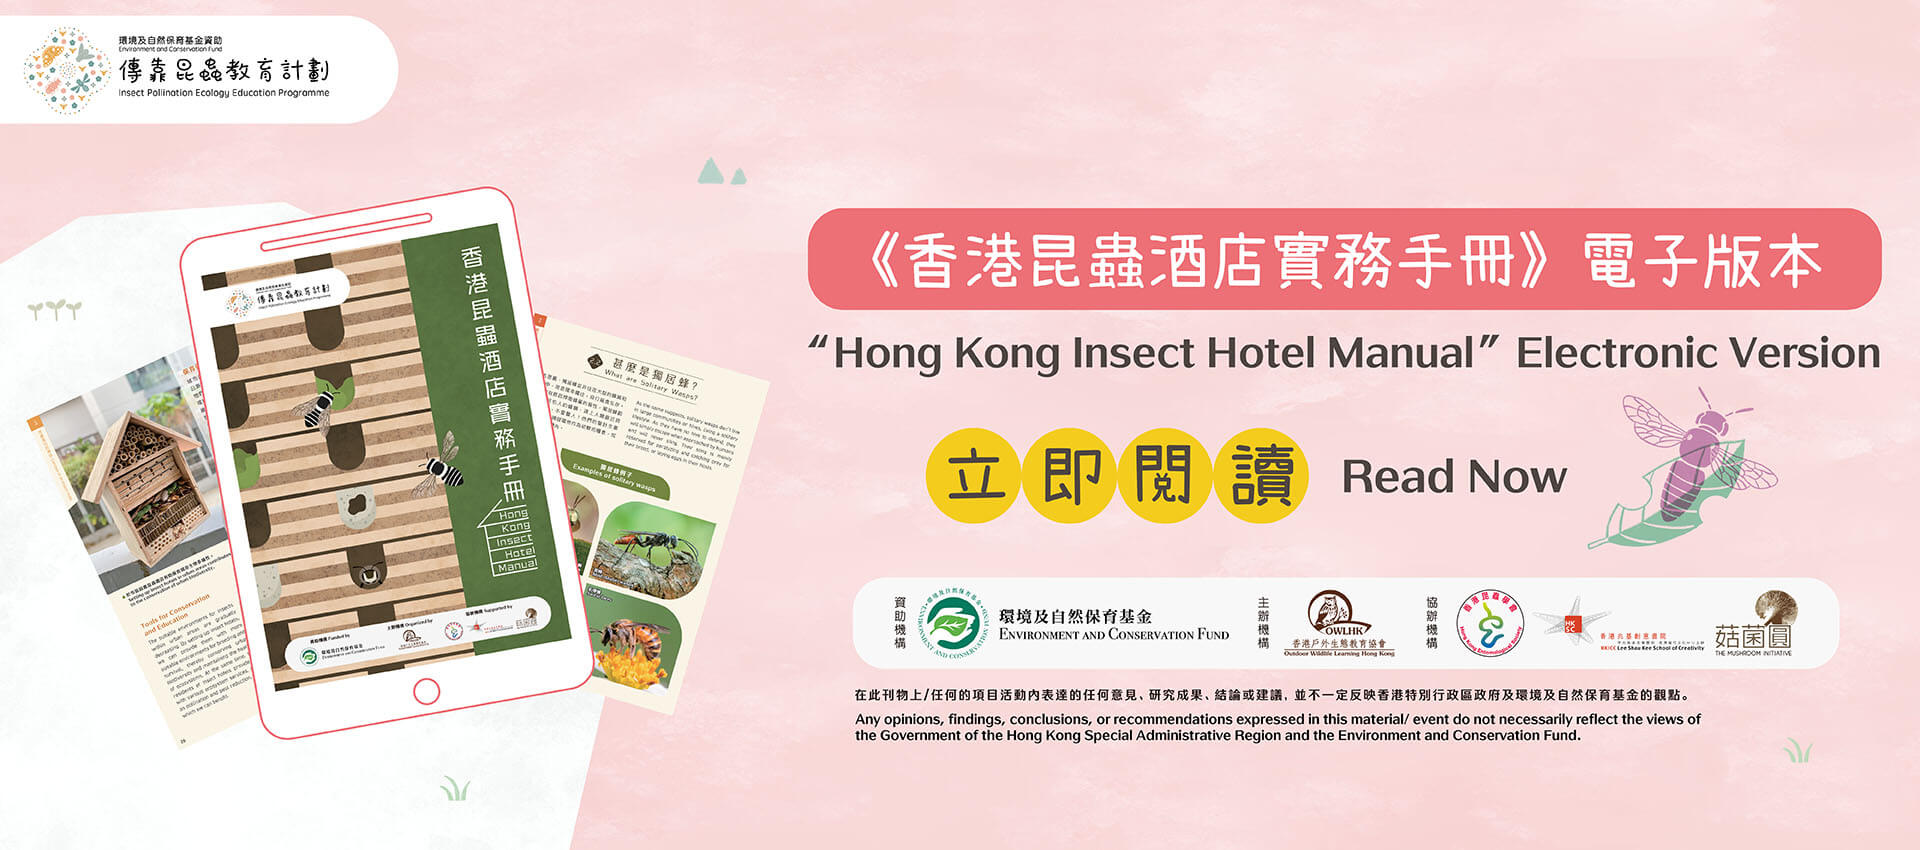 Hong Kong Insect Hotel Manual